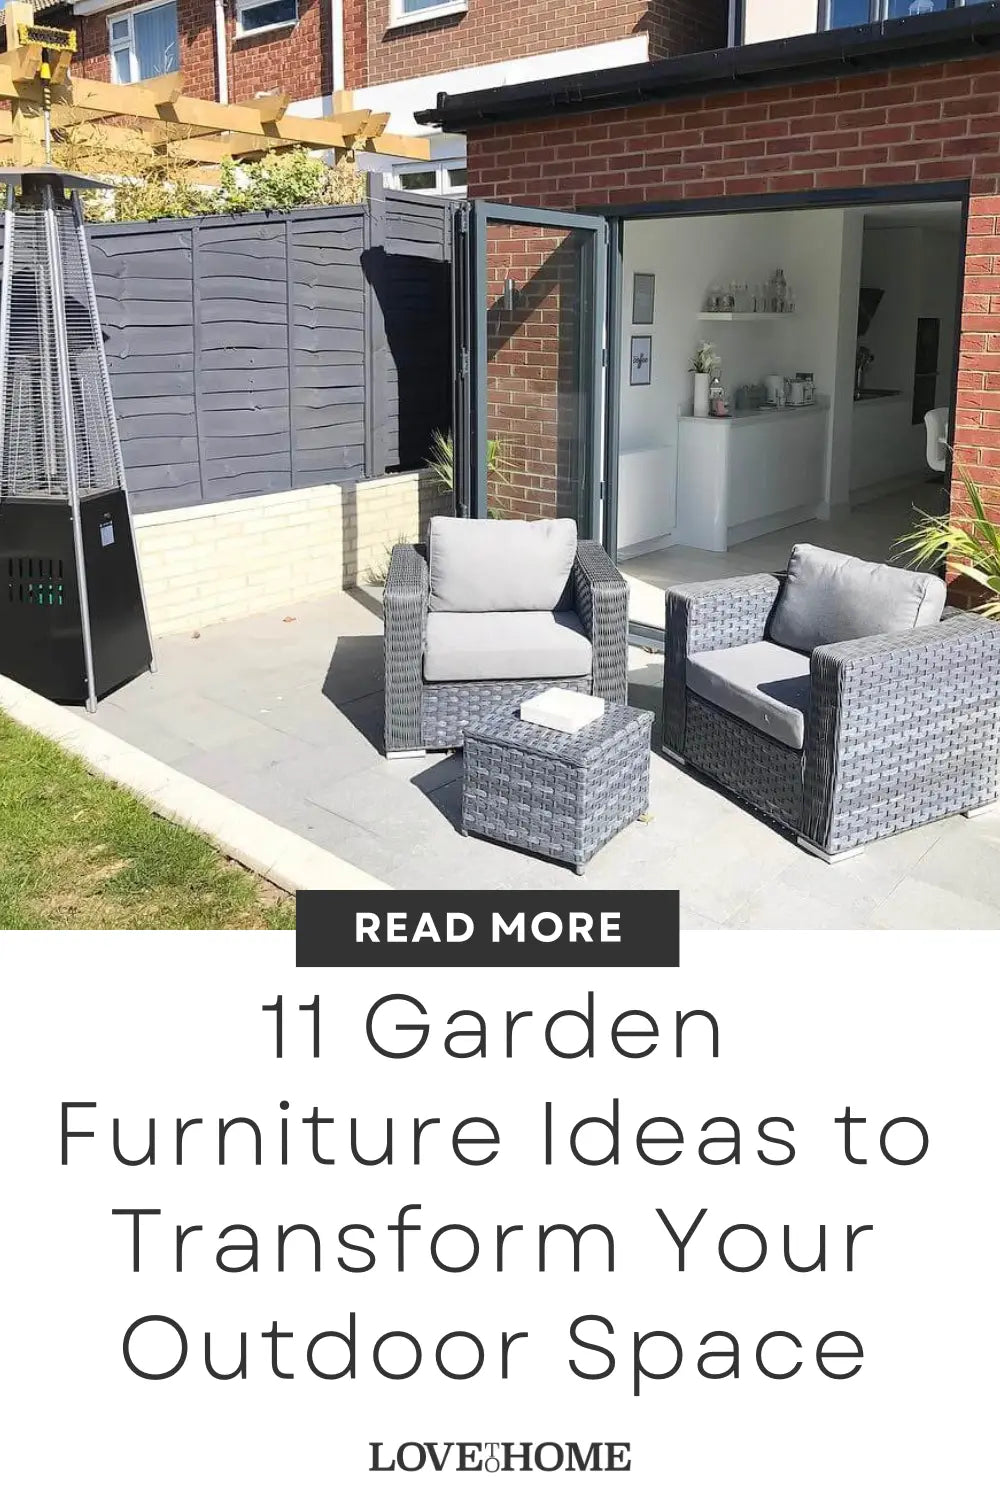 Garden Furniture Ideas